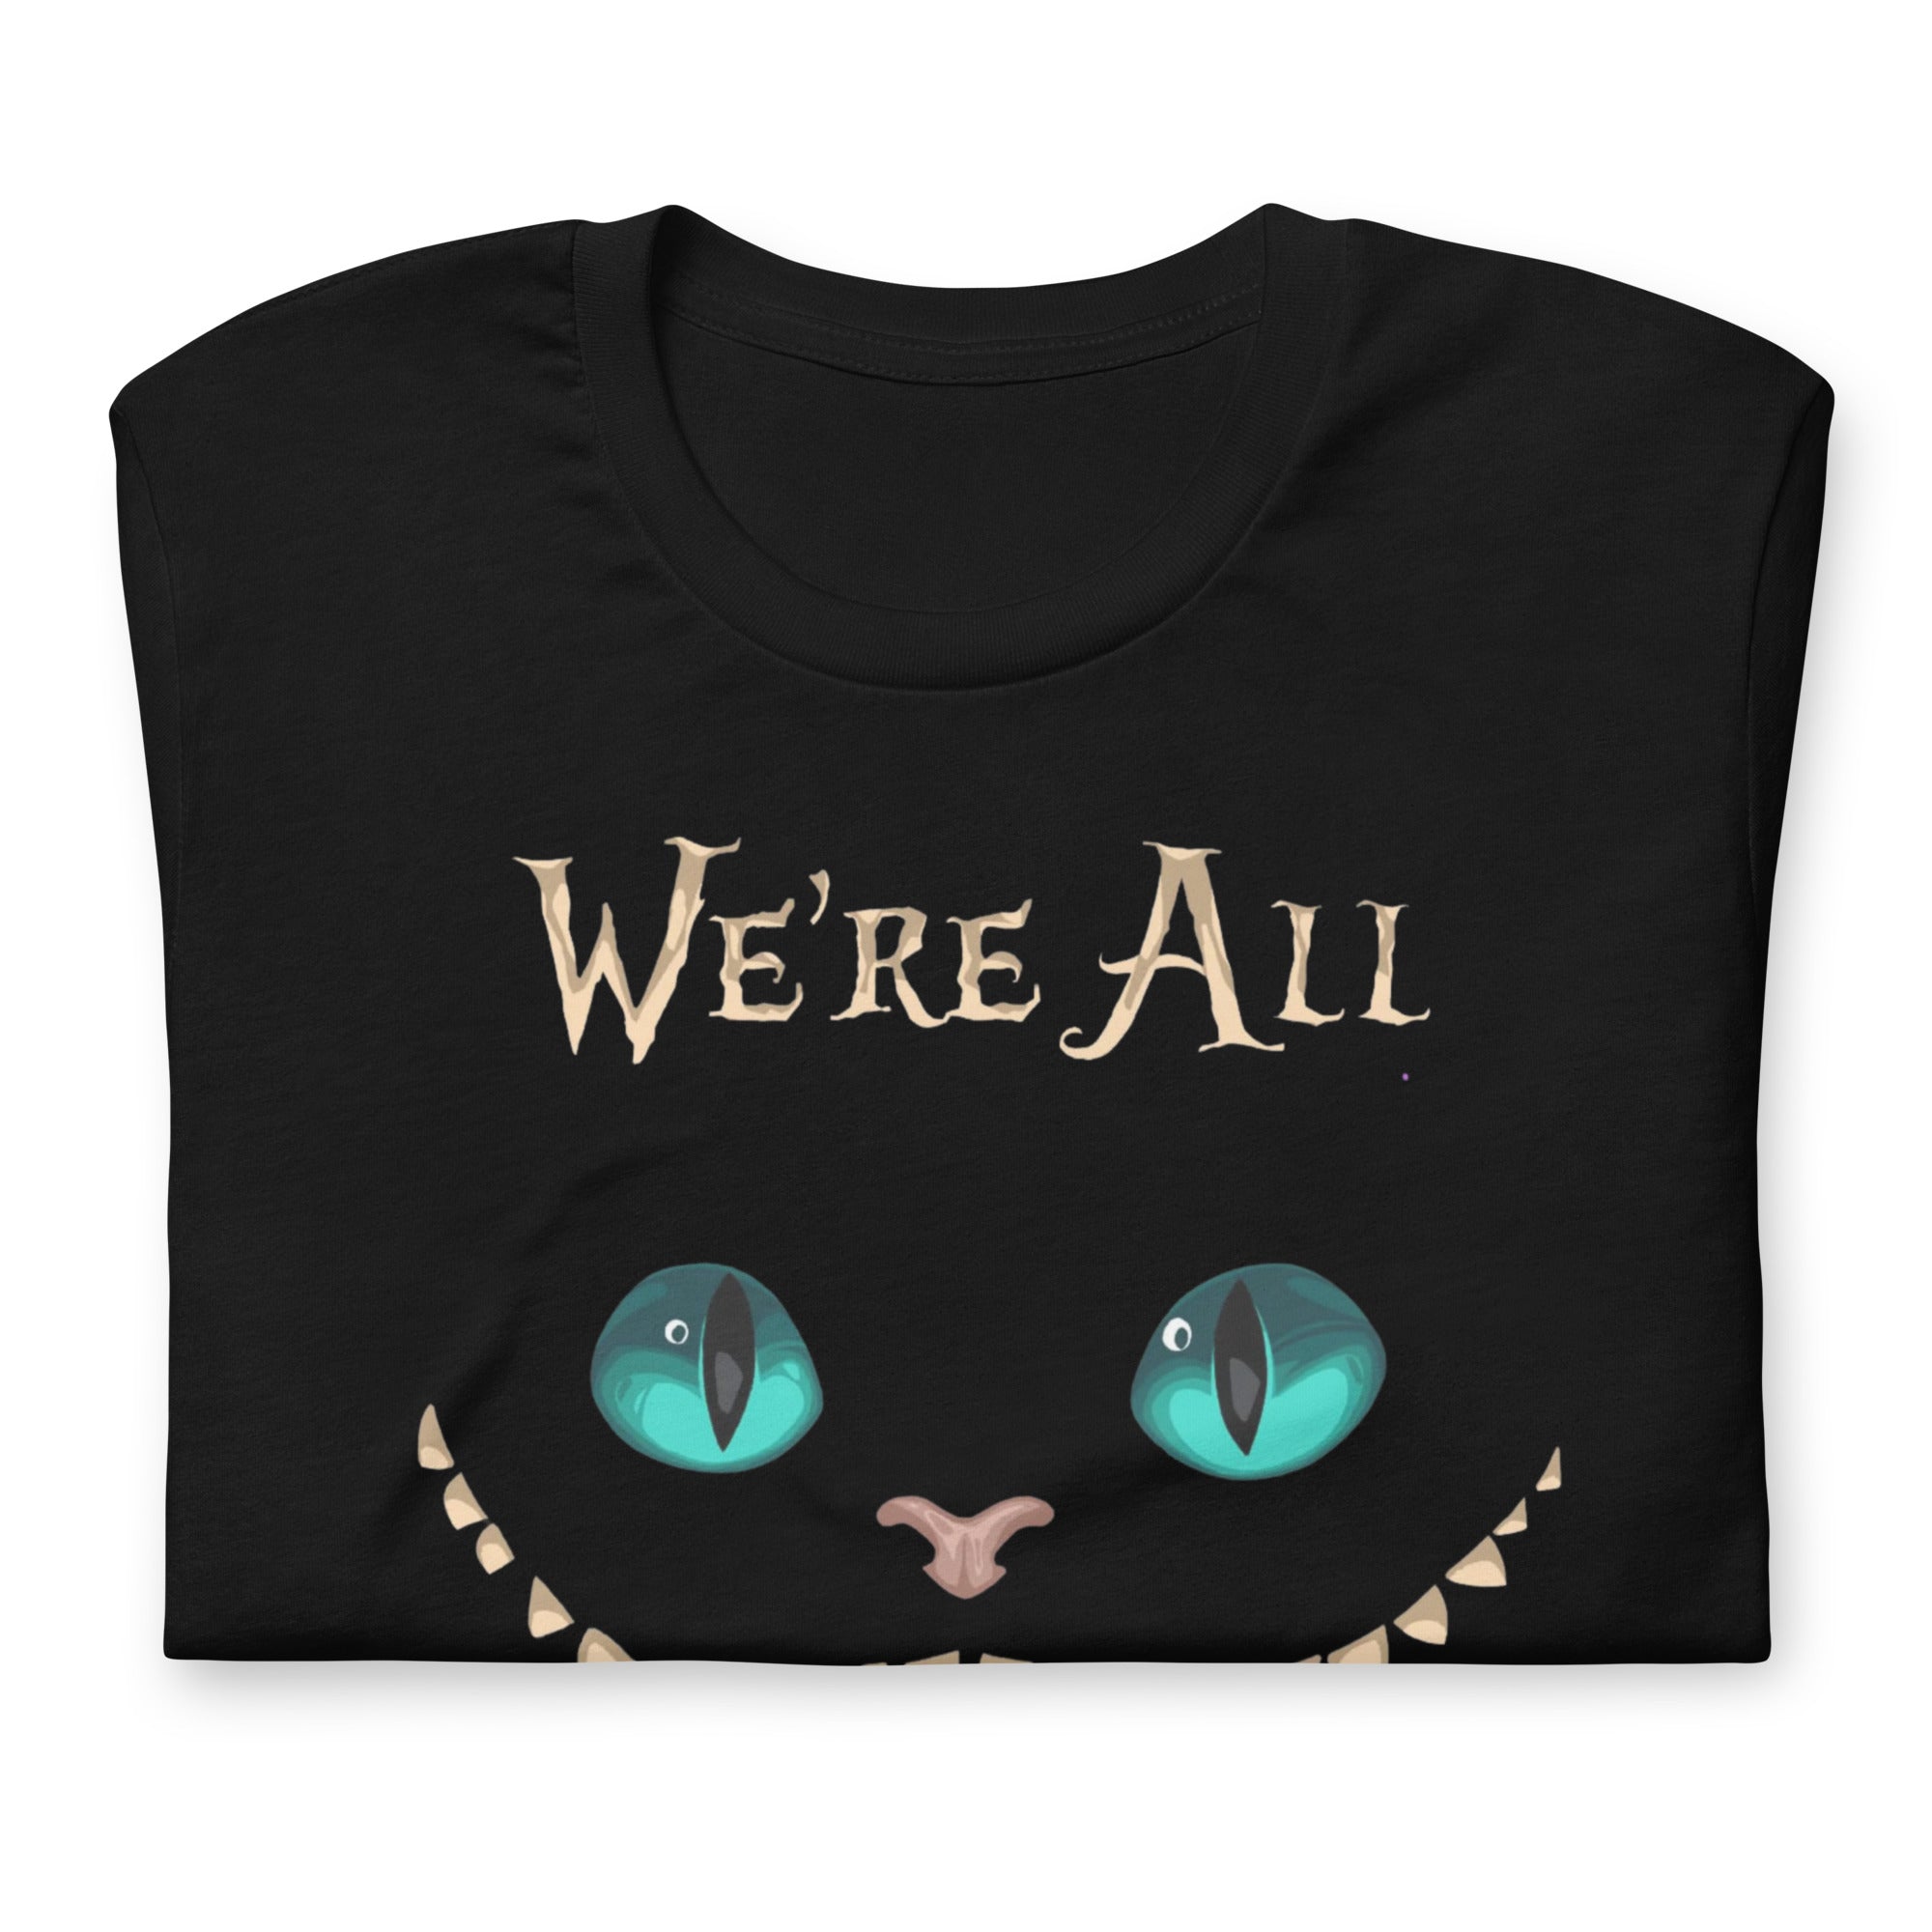 Cheshire cat shirt